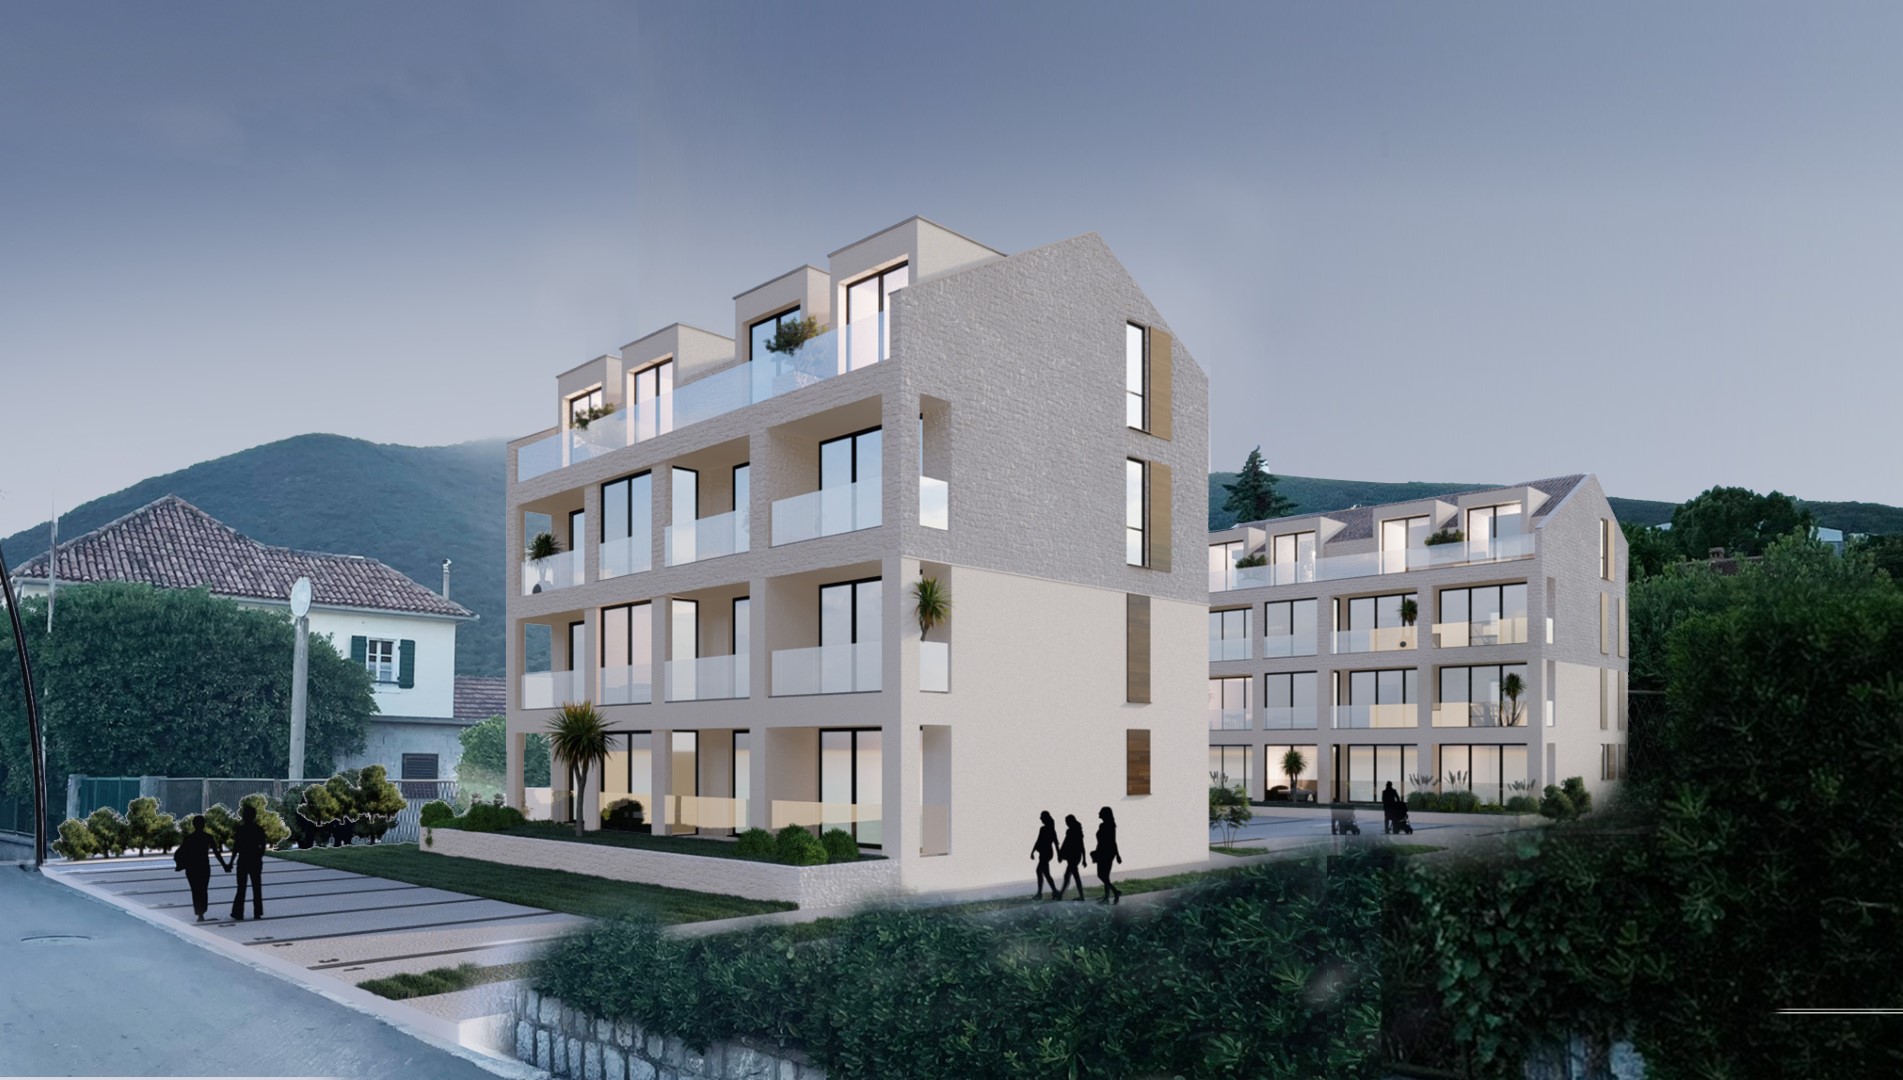 One bedroom apartments in new building in Bijela-Herceg Novi